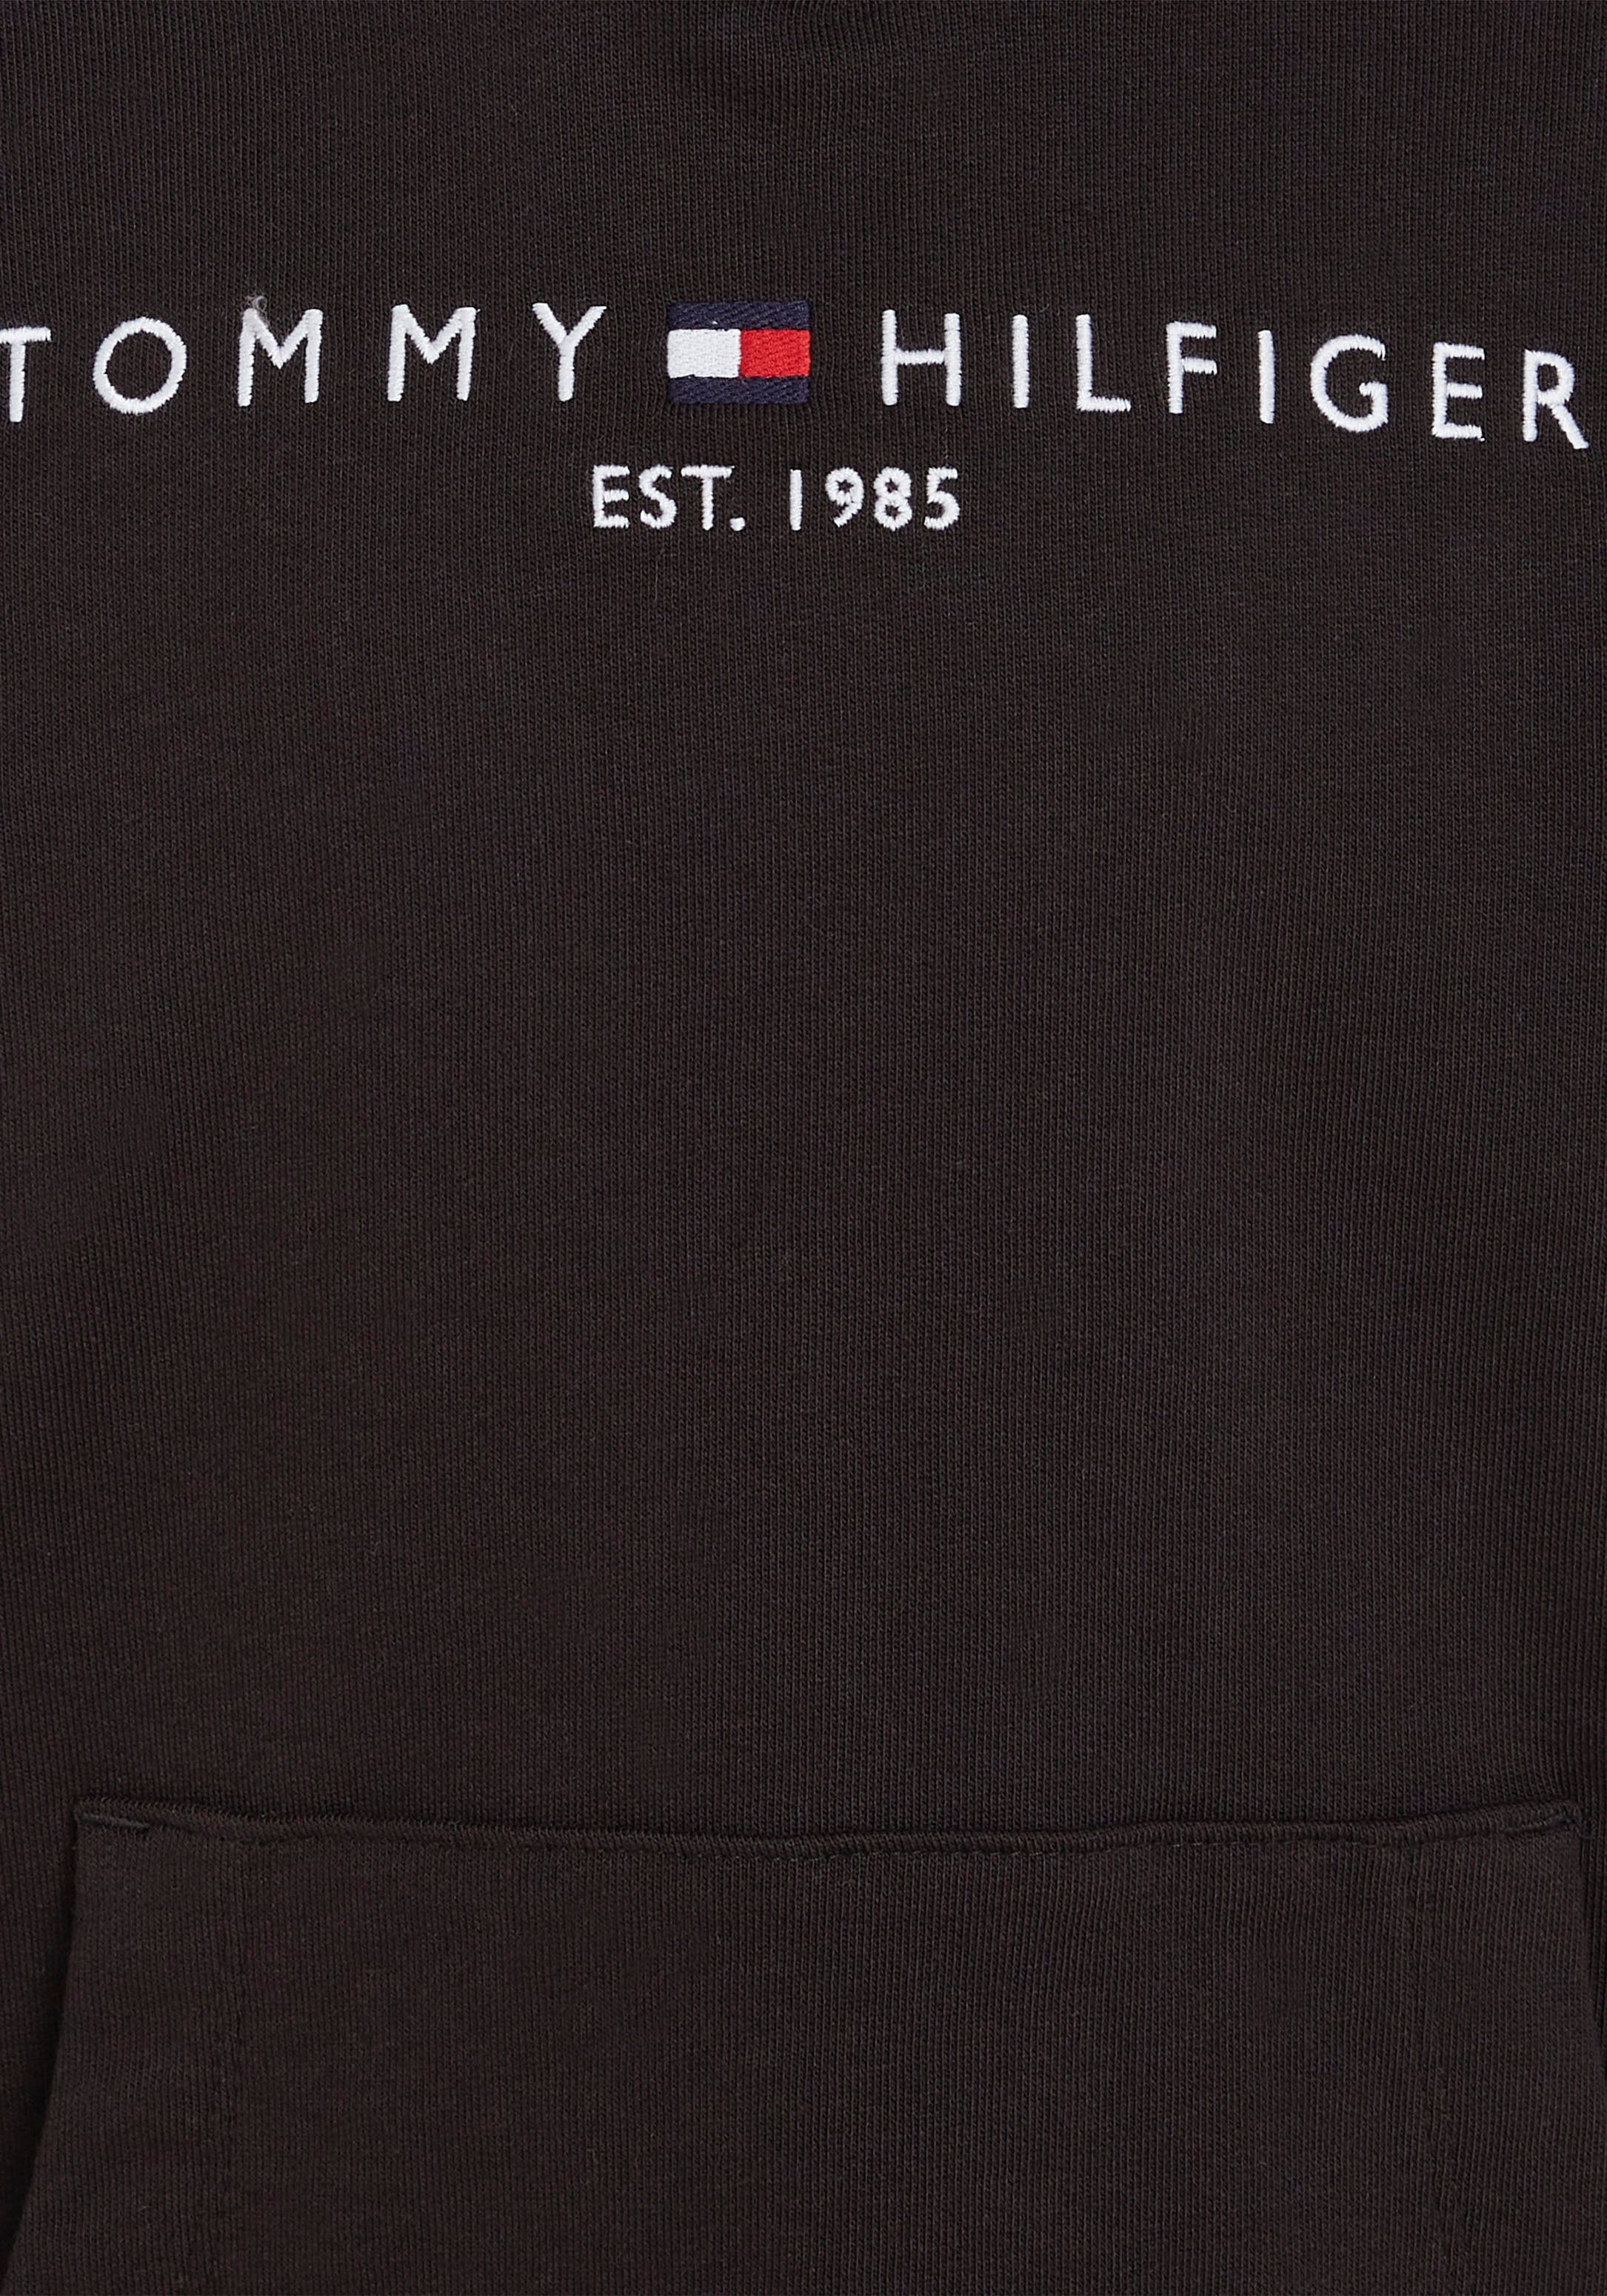 Tommy Hilfiger Kapuzensweatshirt »ESSENTIAL HOODIE«, Kinder Kids Junior MiniMe,für Jungen und Mädchen